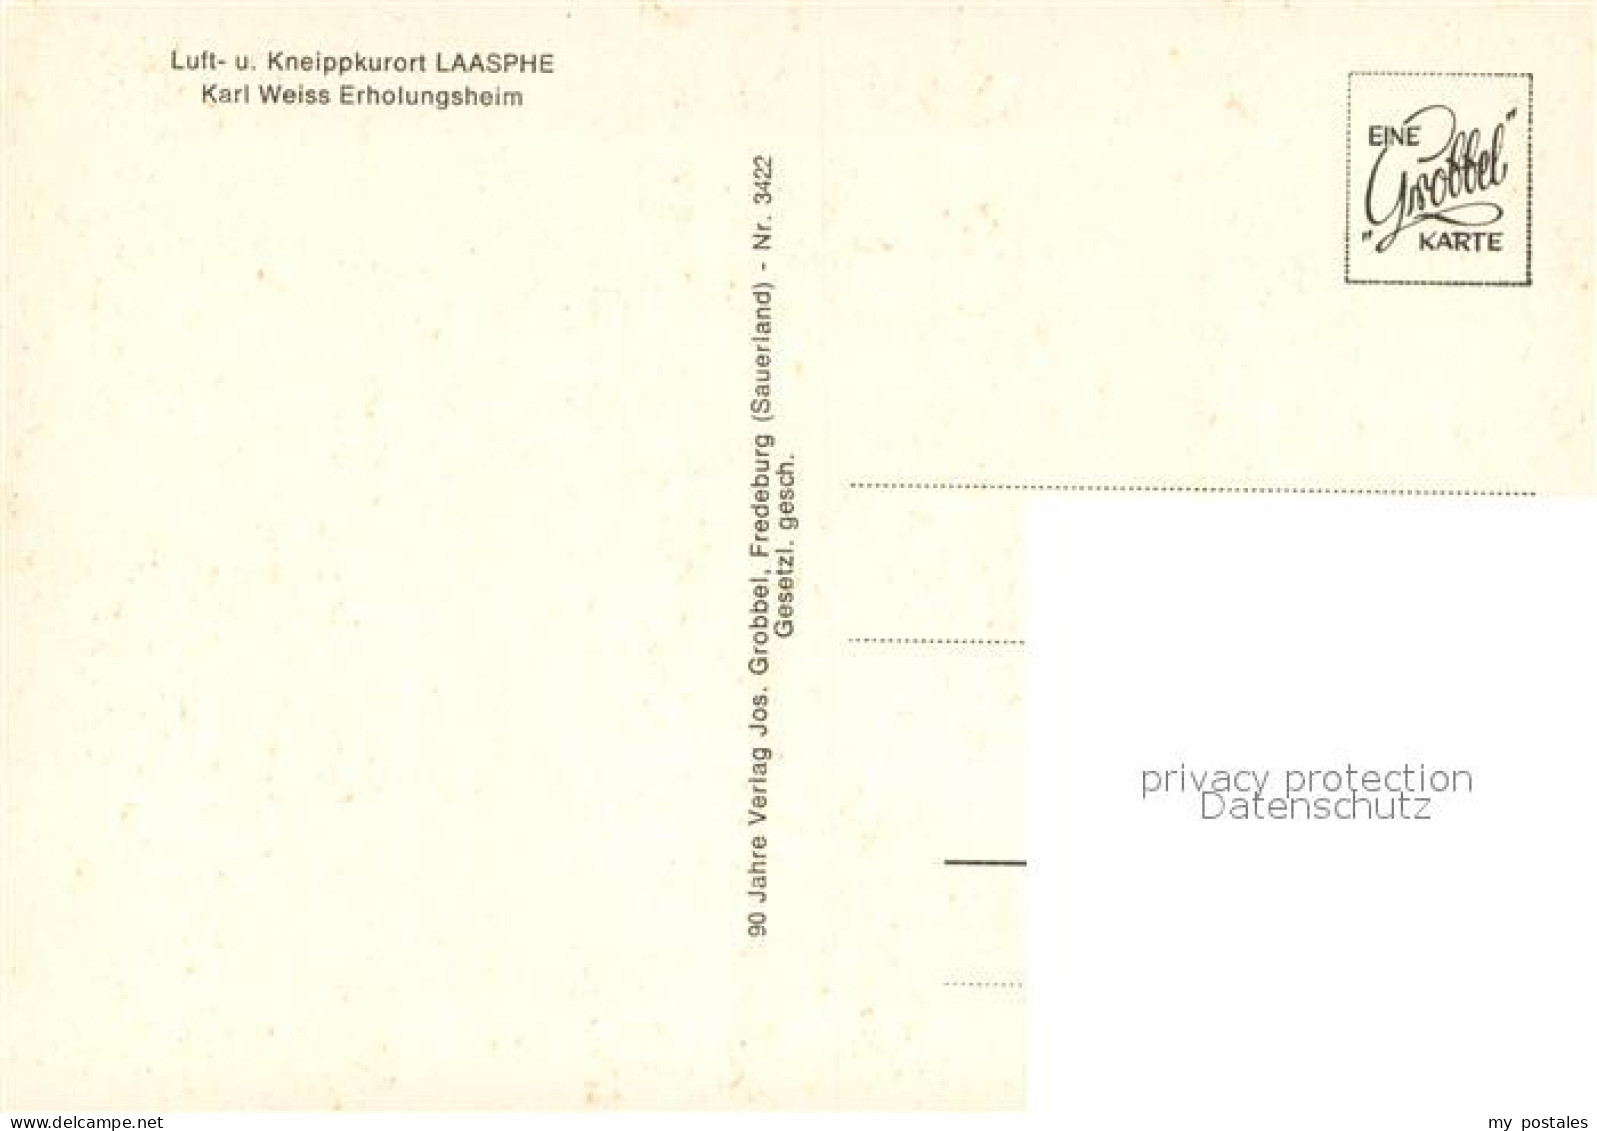 73650122 Laasphe Karl Weiss Erholungsheim Laasphe - Bad Laasphe